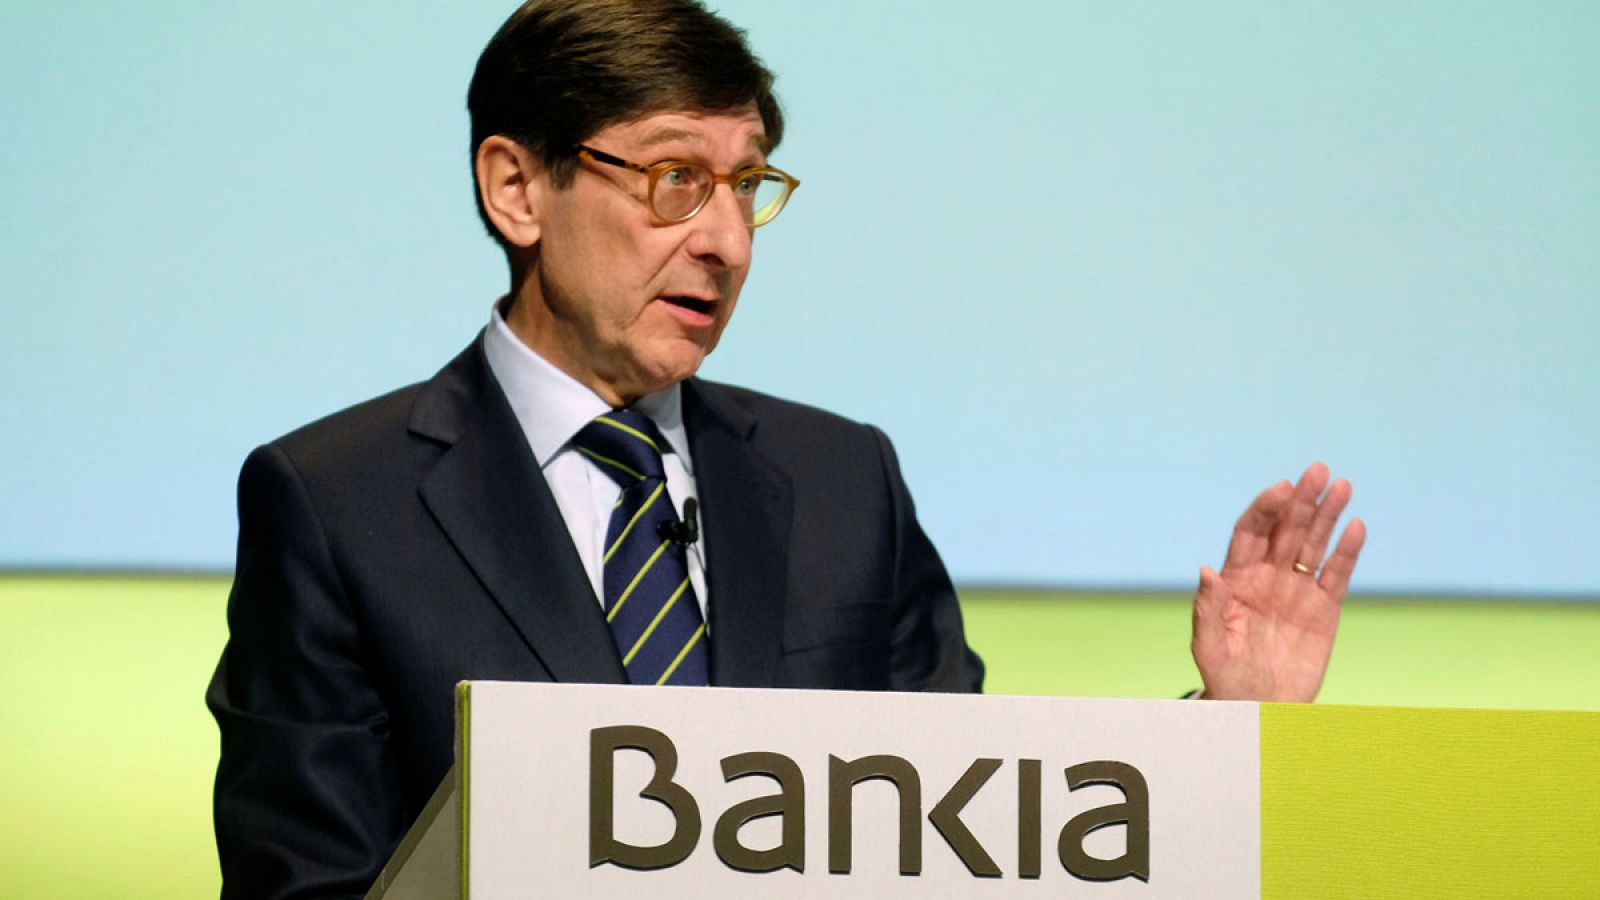 El presidente ejecutivo de Bankia, José Ignacio Goirigolzarri, durante su discurso en la junta general de accionistas